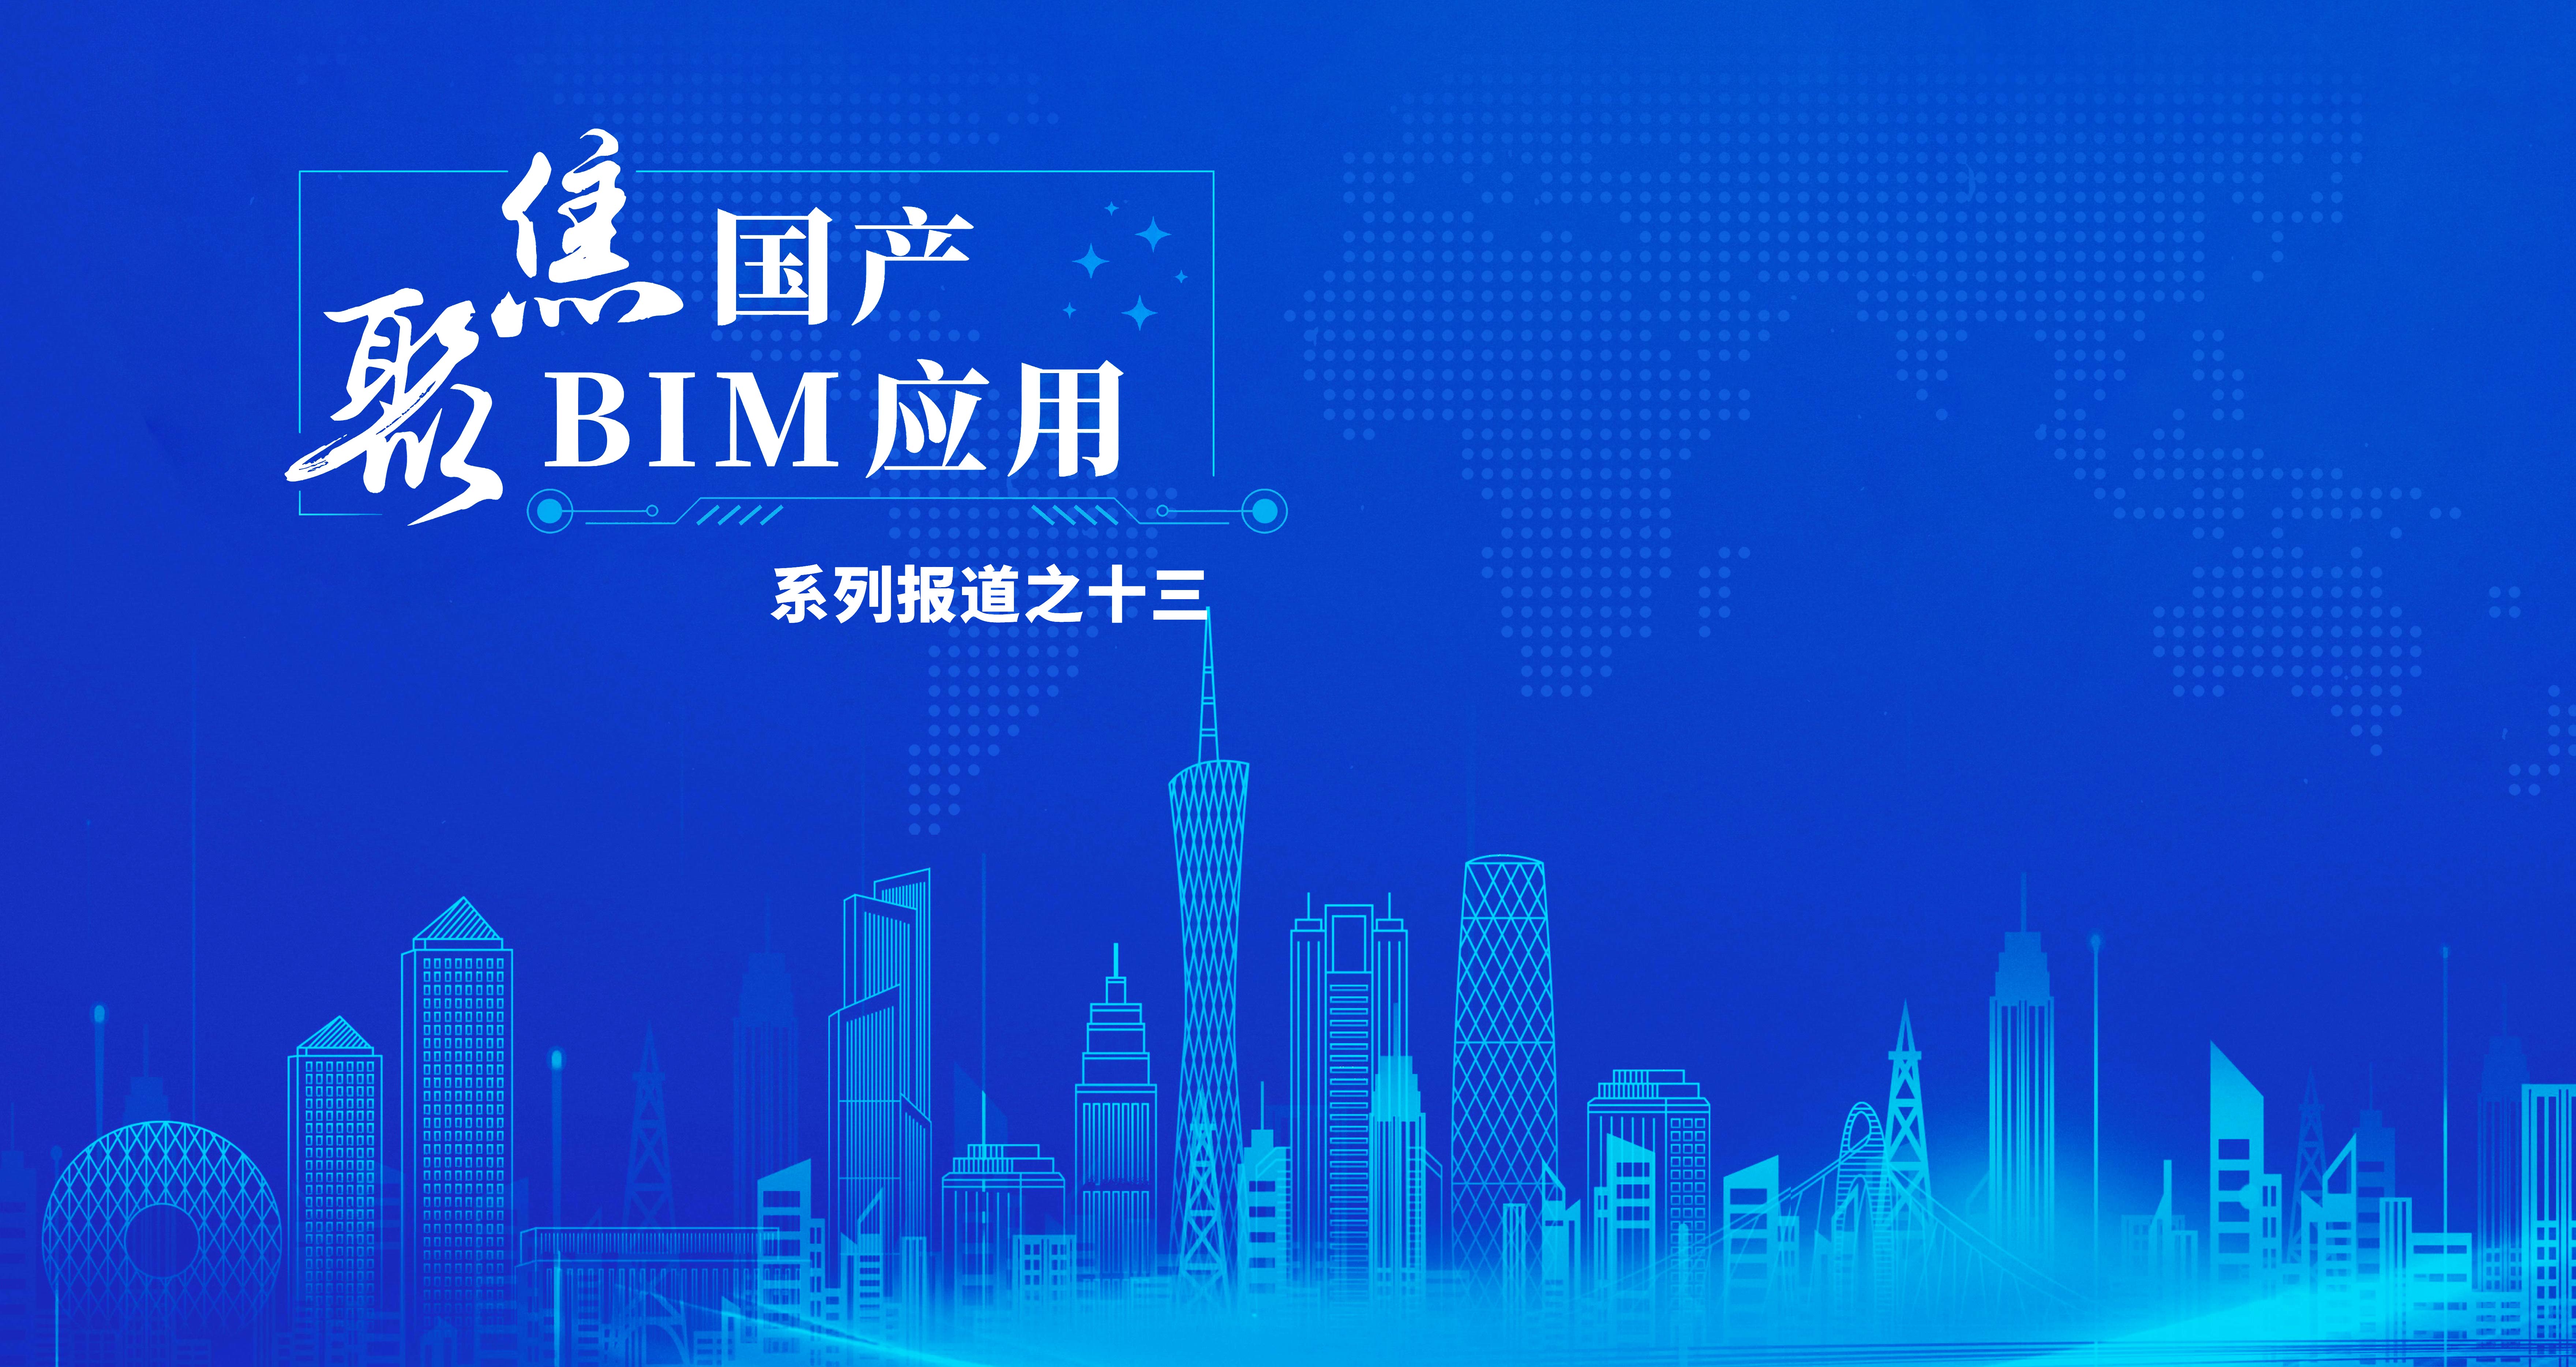 宁波市首批公建项目国产BIM软件应用落地